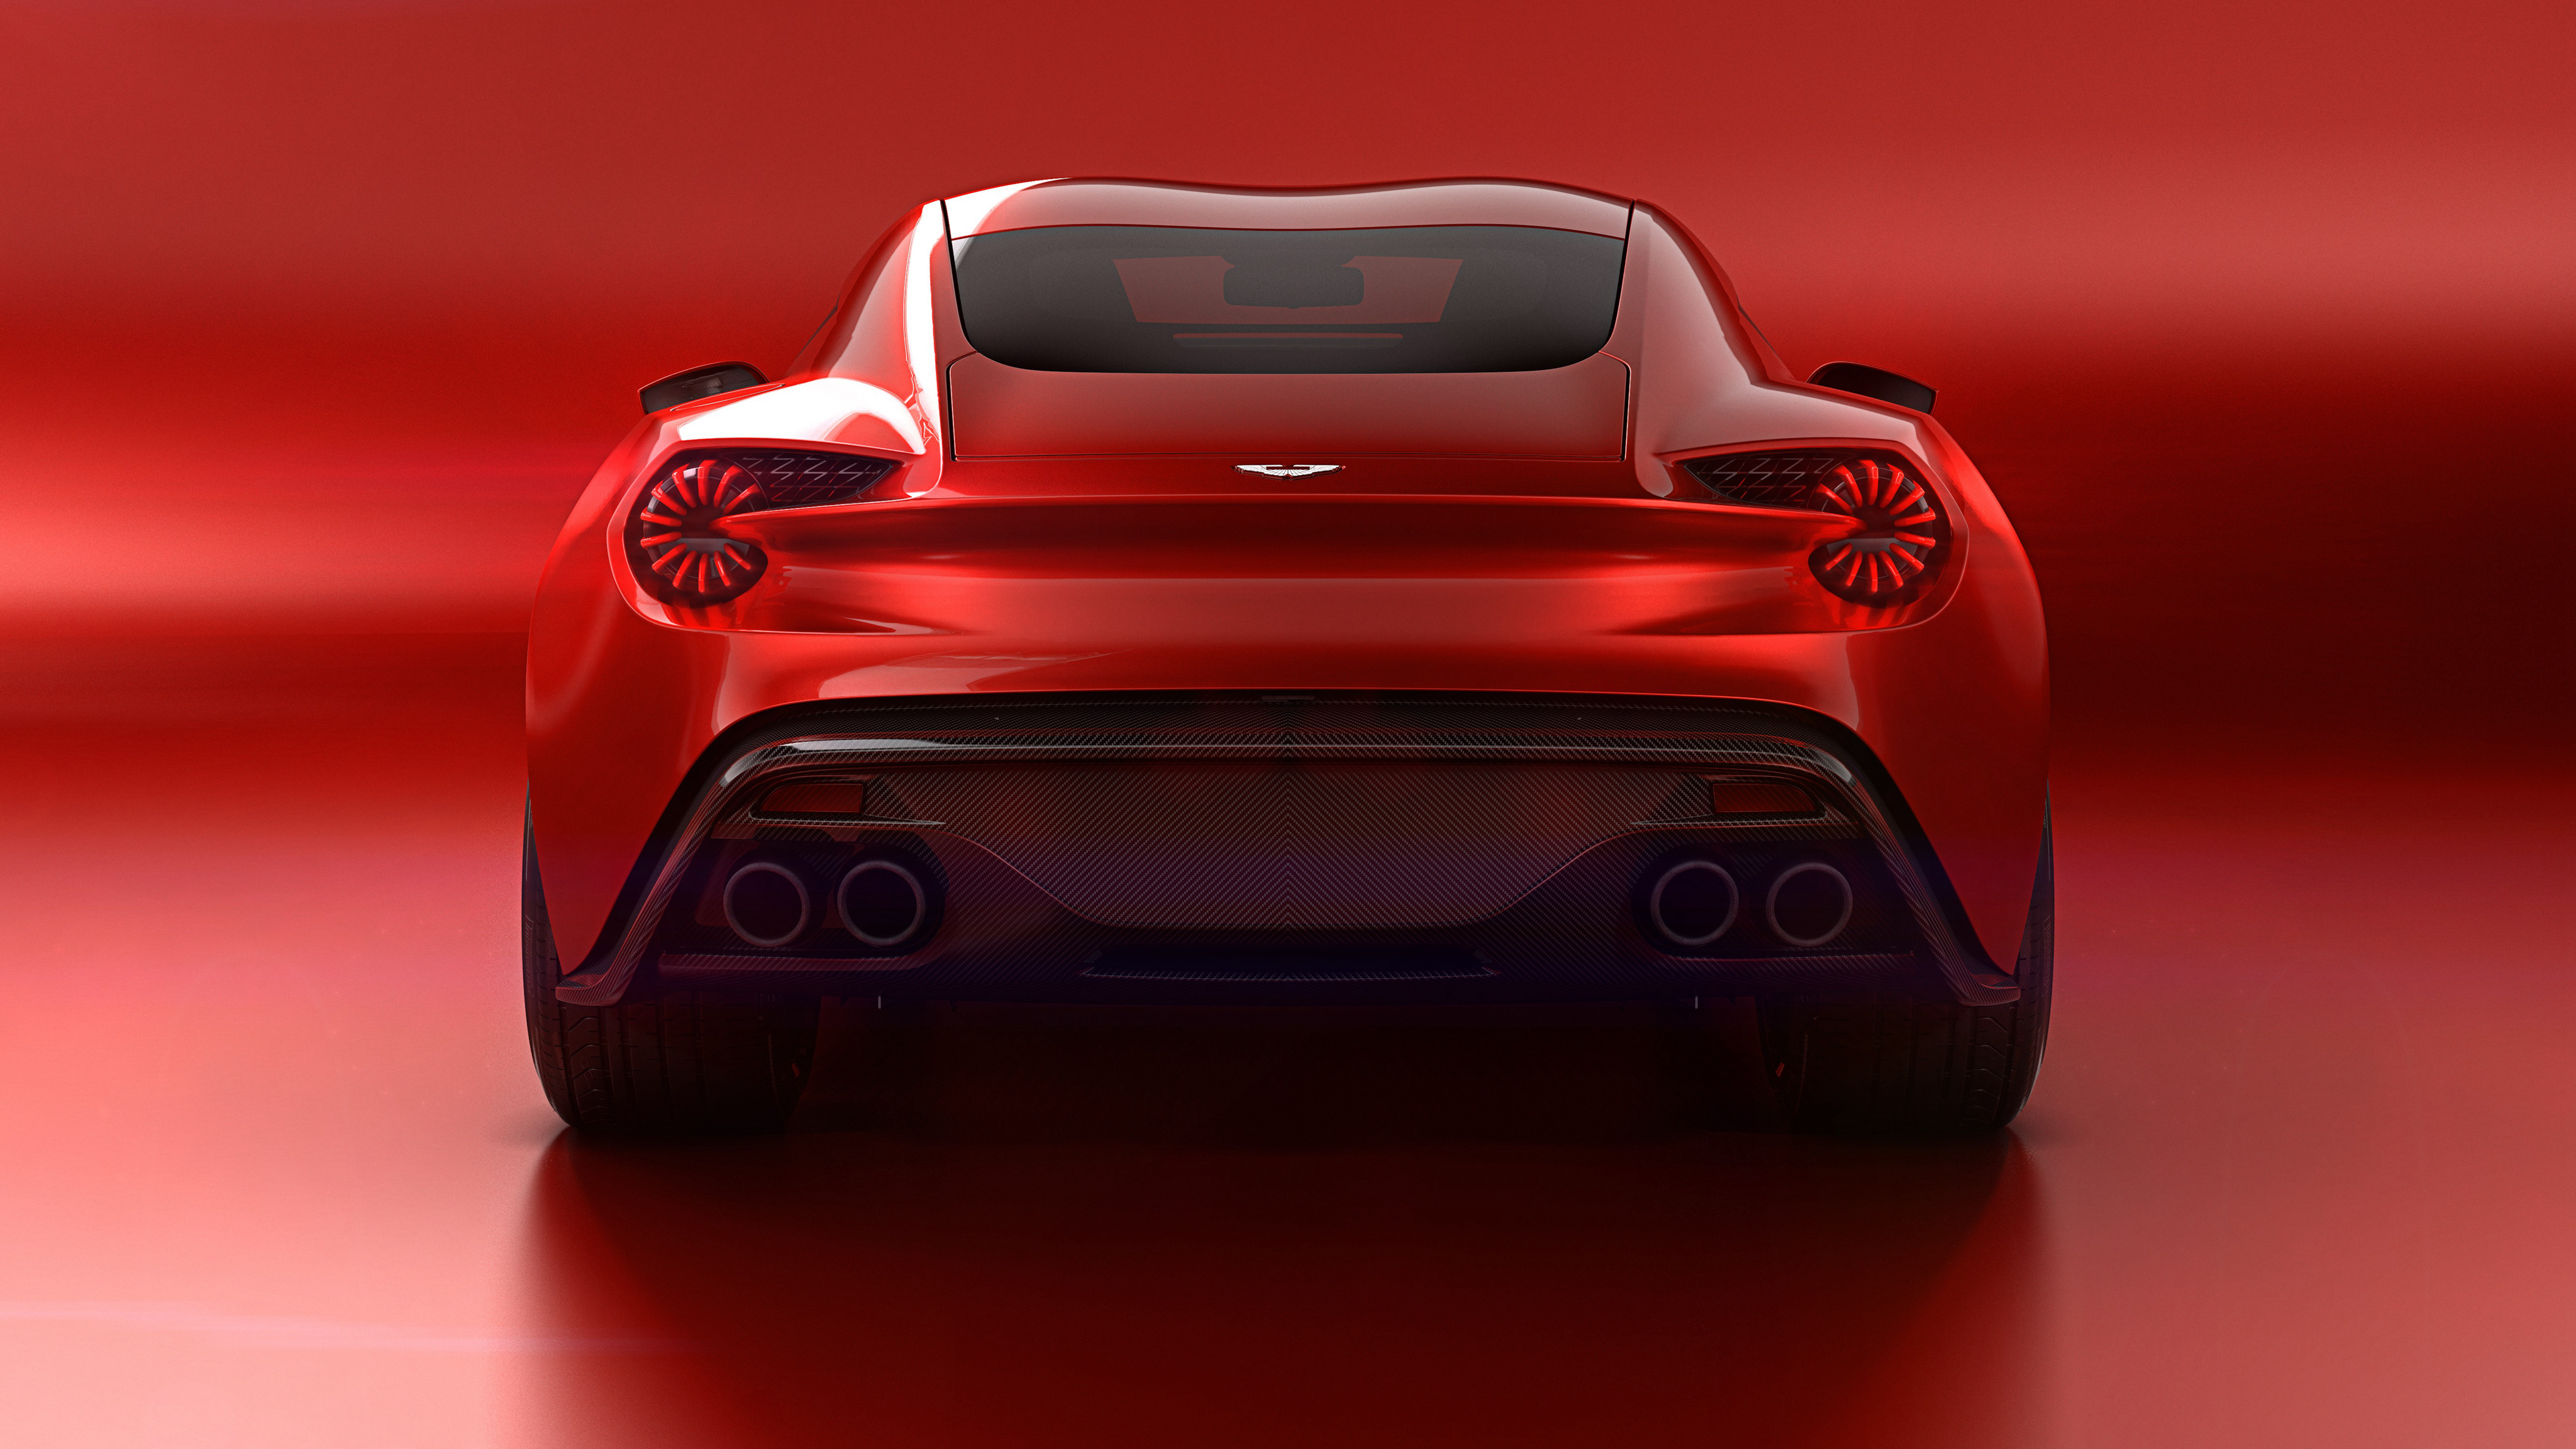 Descarga gratuita de fondo de pantalla para móvil de Aston Martin, Coche, Superdeportivo, Vehículos, Aston Martin Vanquish.